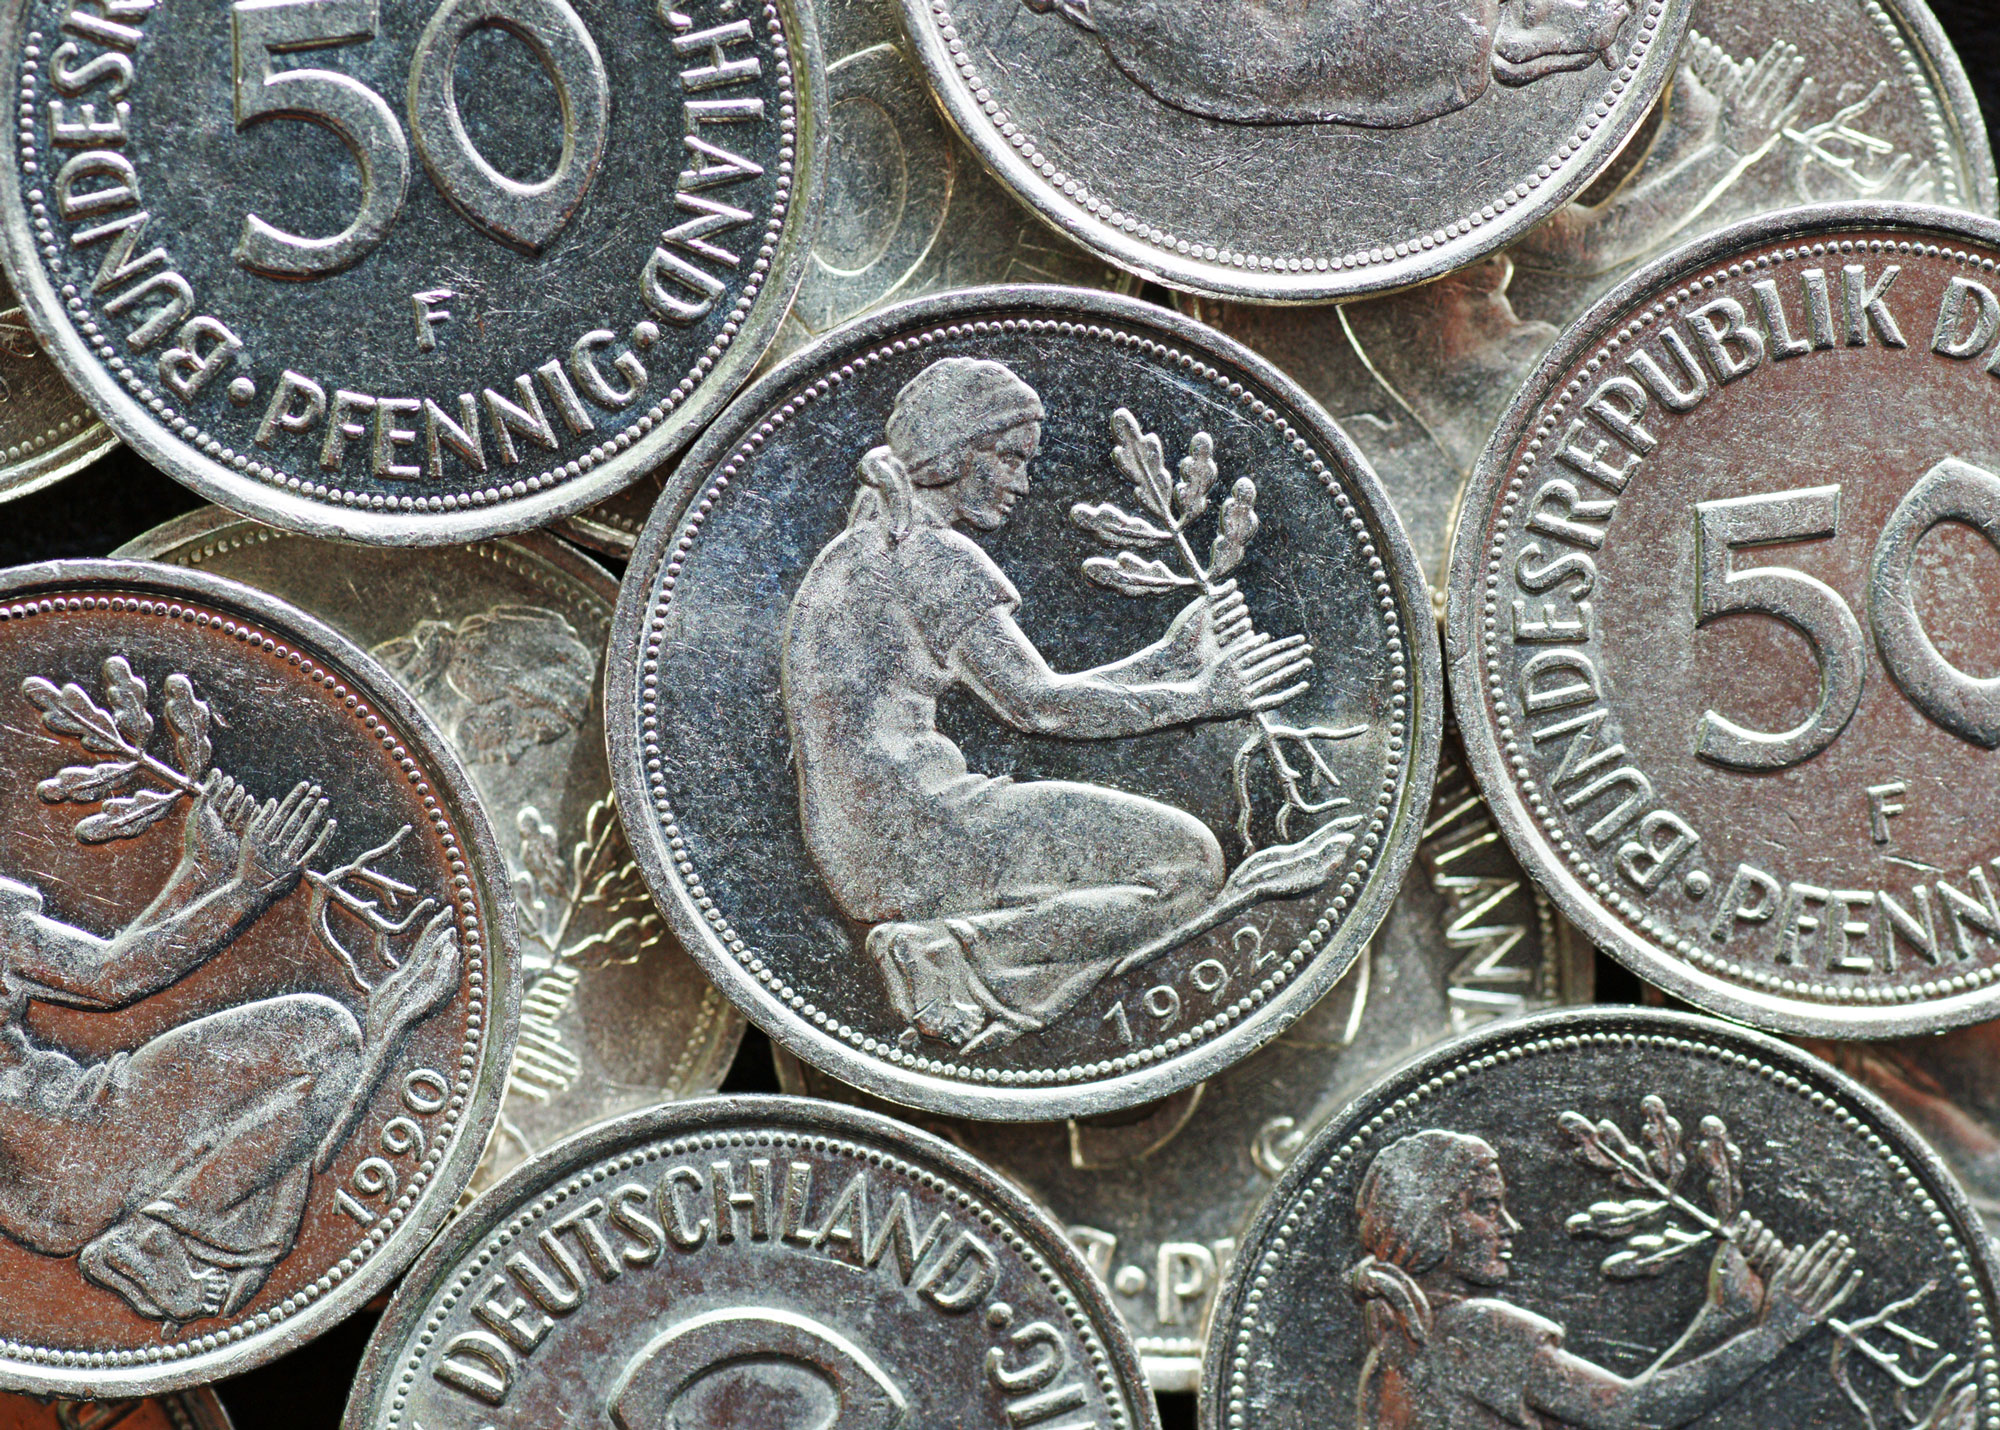 50-pfennig coins